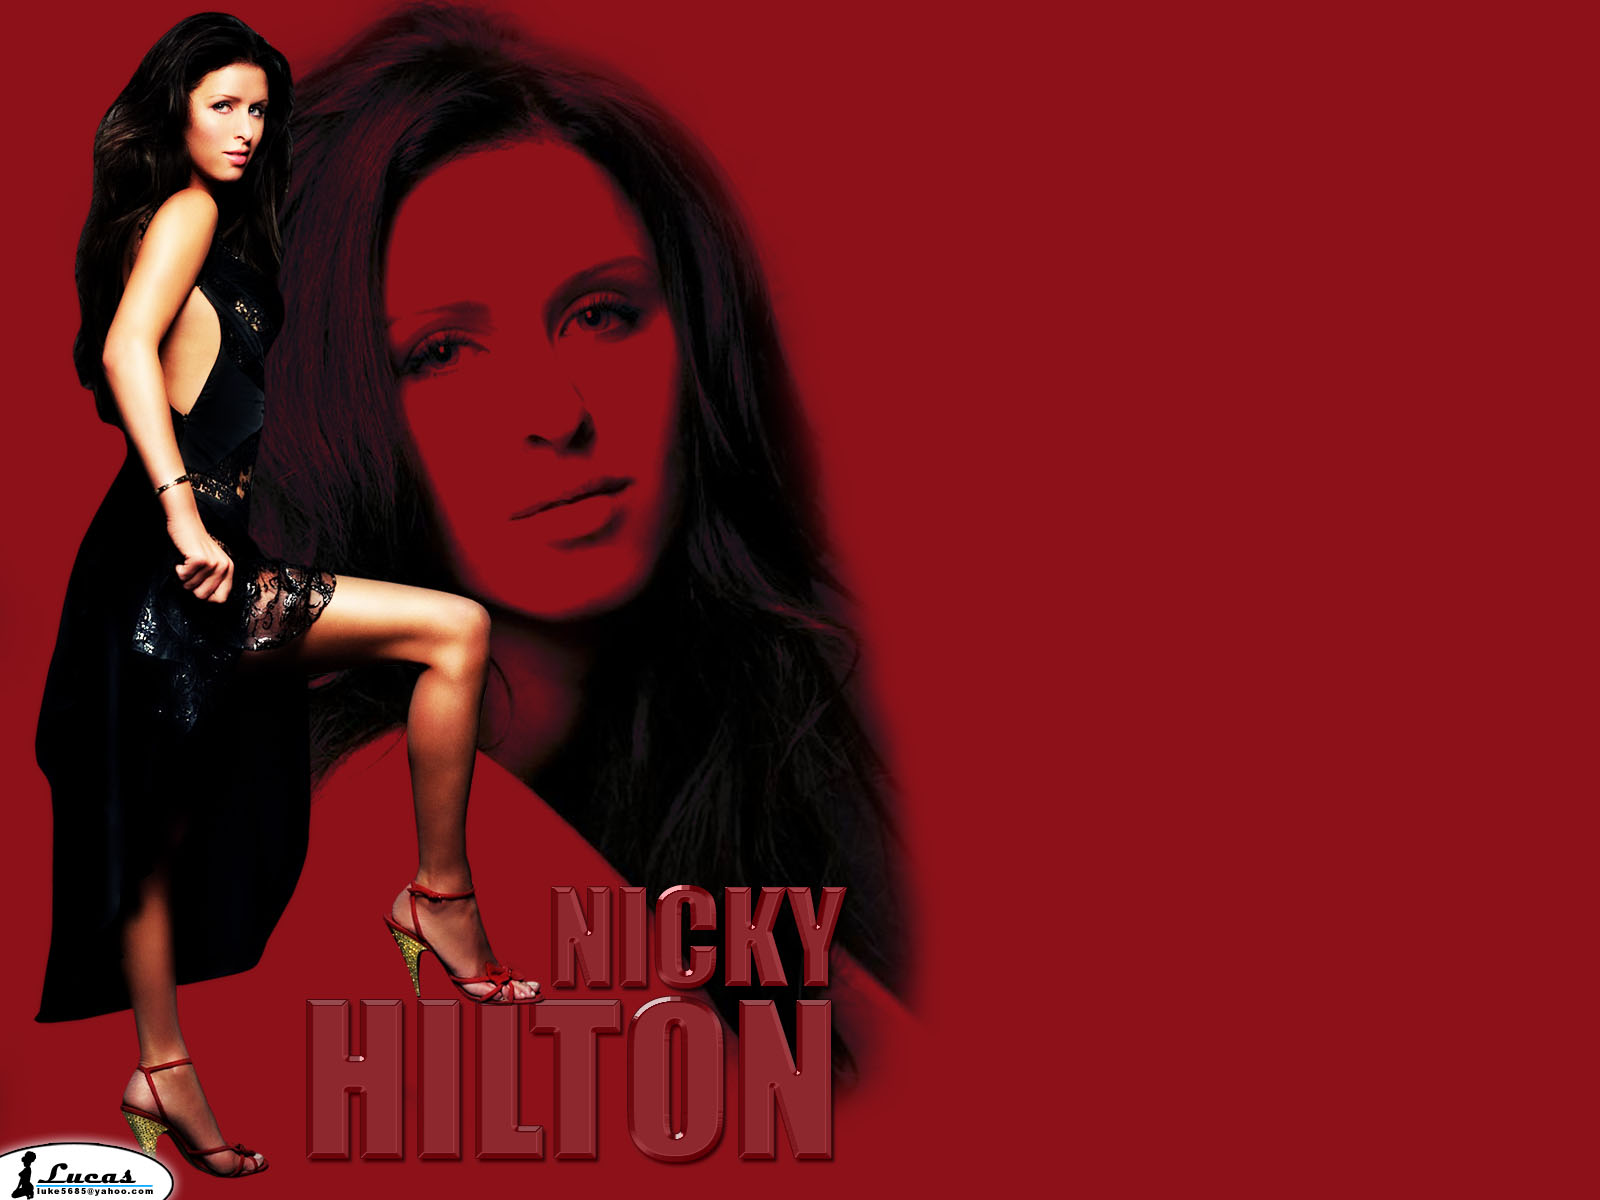 Nicky hilton 6